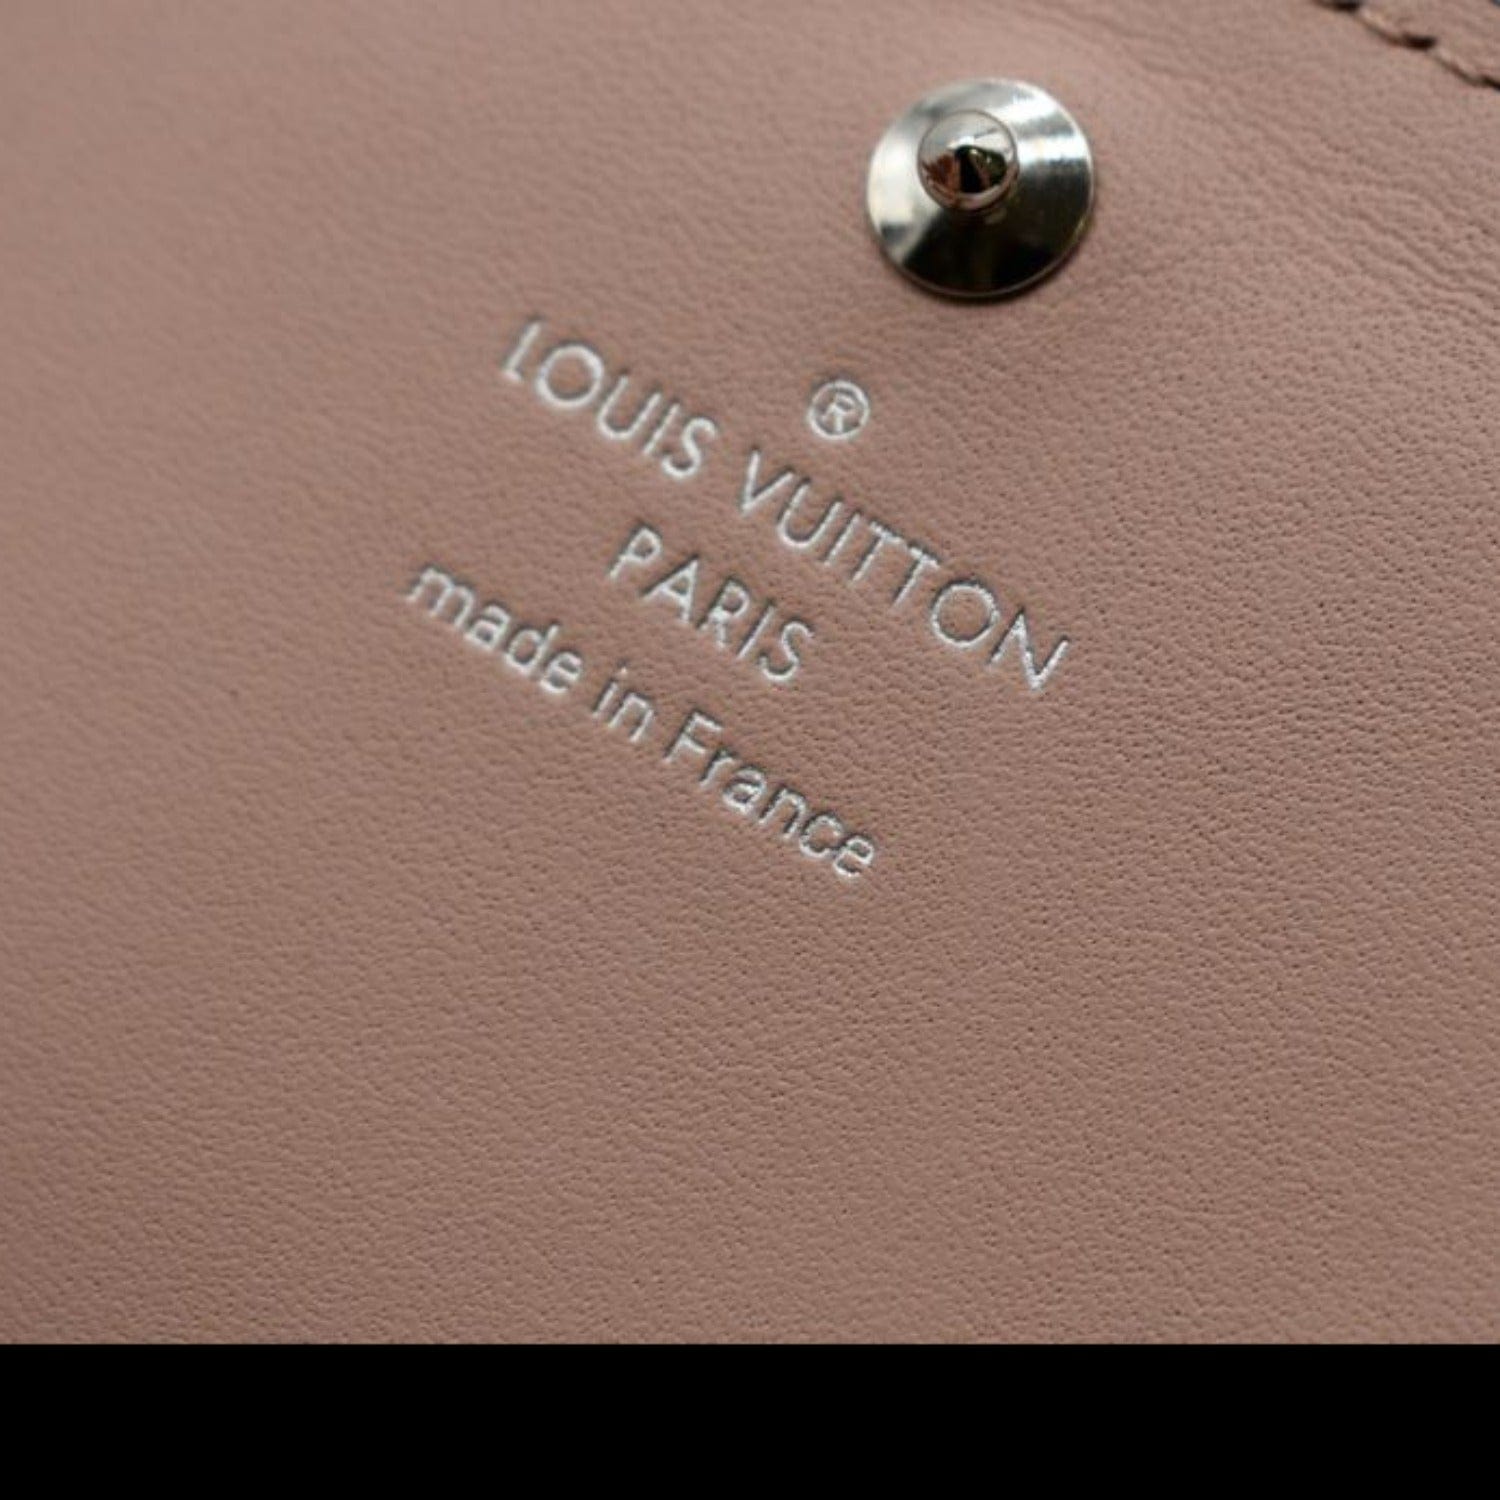 Louis Vuitton Iris Wallet NM Mahina Leather Neutral